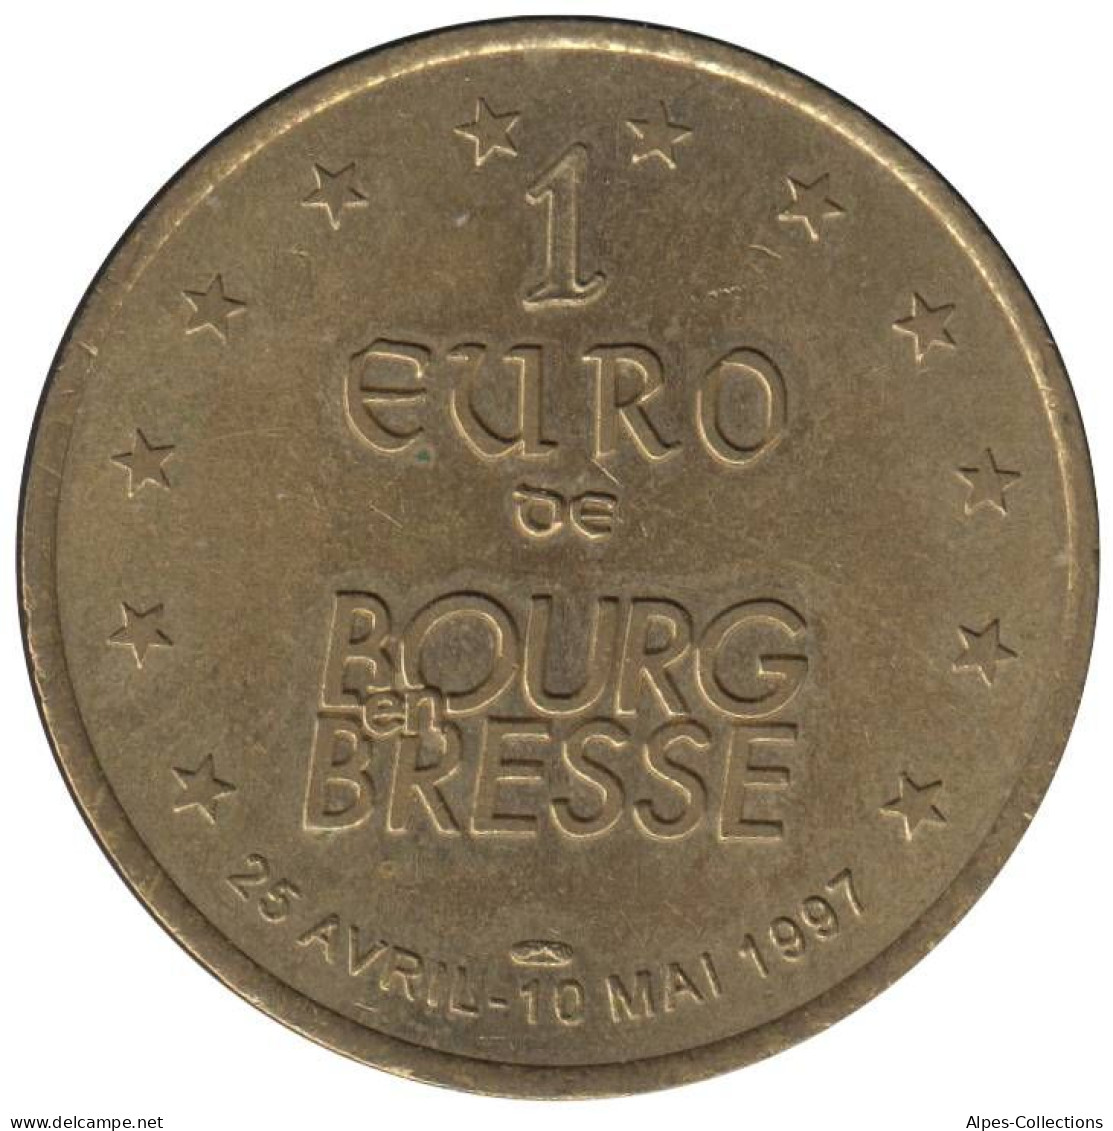 BOURG EN BRESSE - EU0010.6 - 1 EURO DES VILLES - Réf: T266 - 1997 - Euros Of The Cities